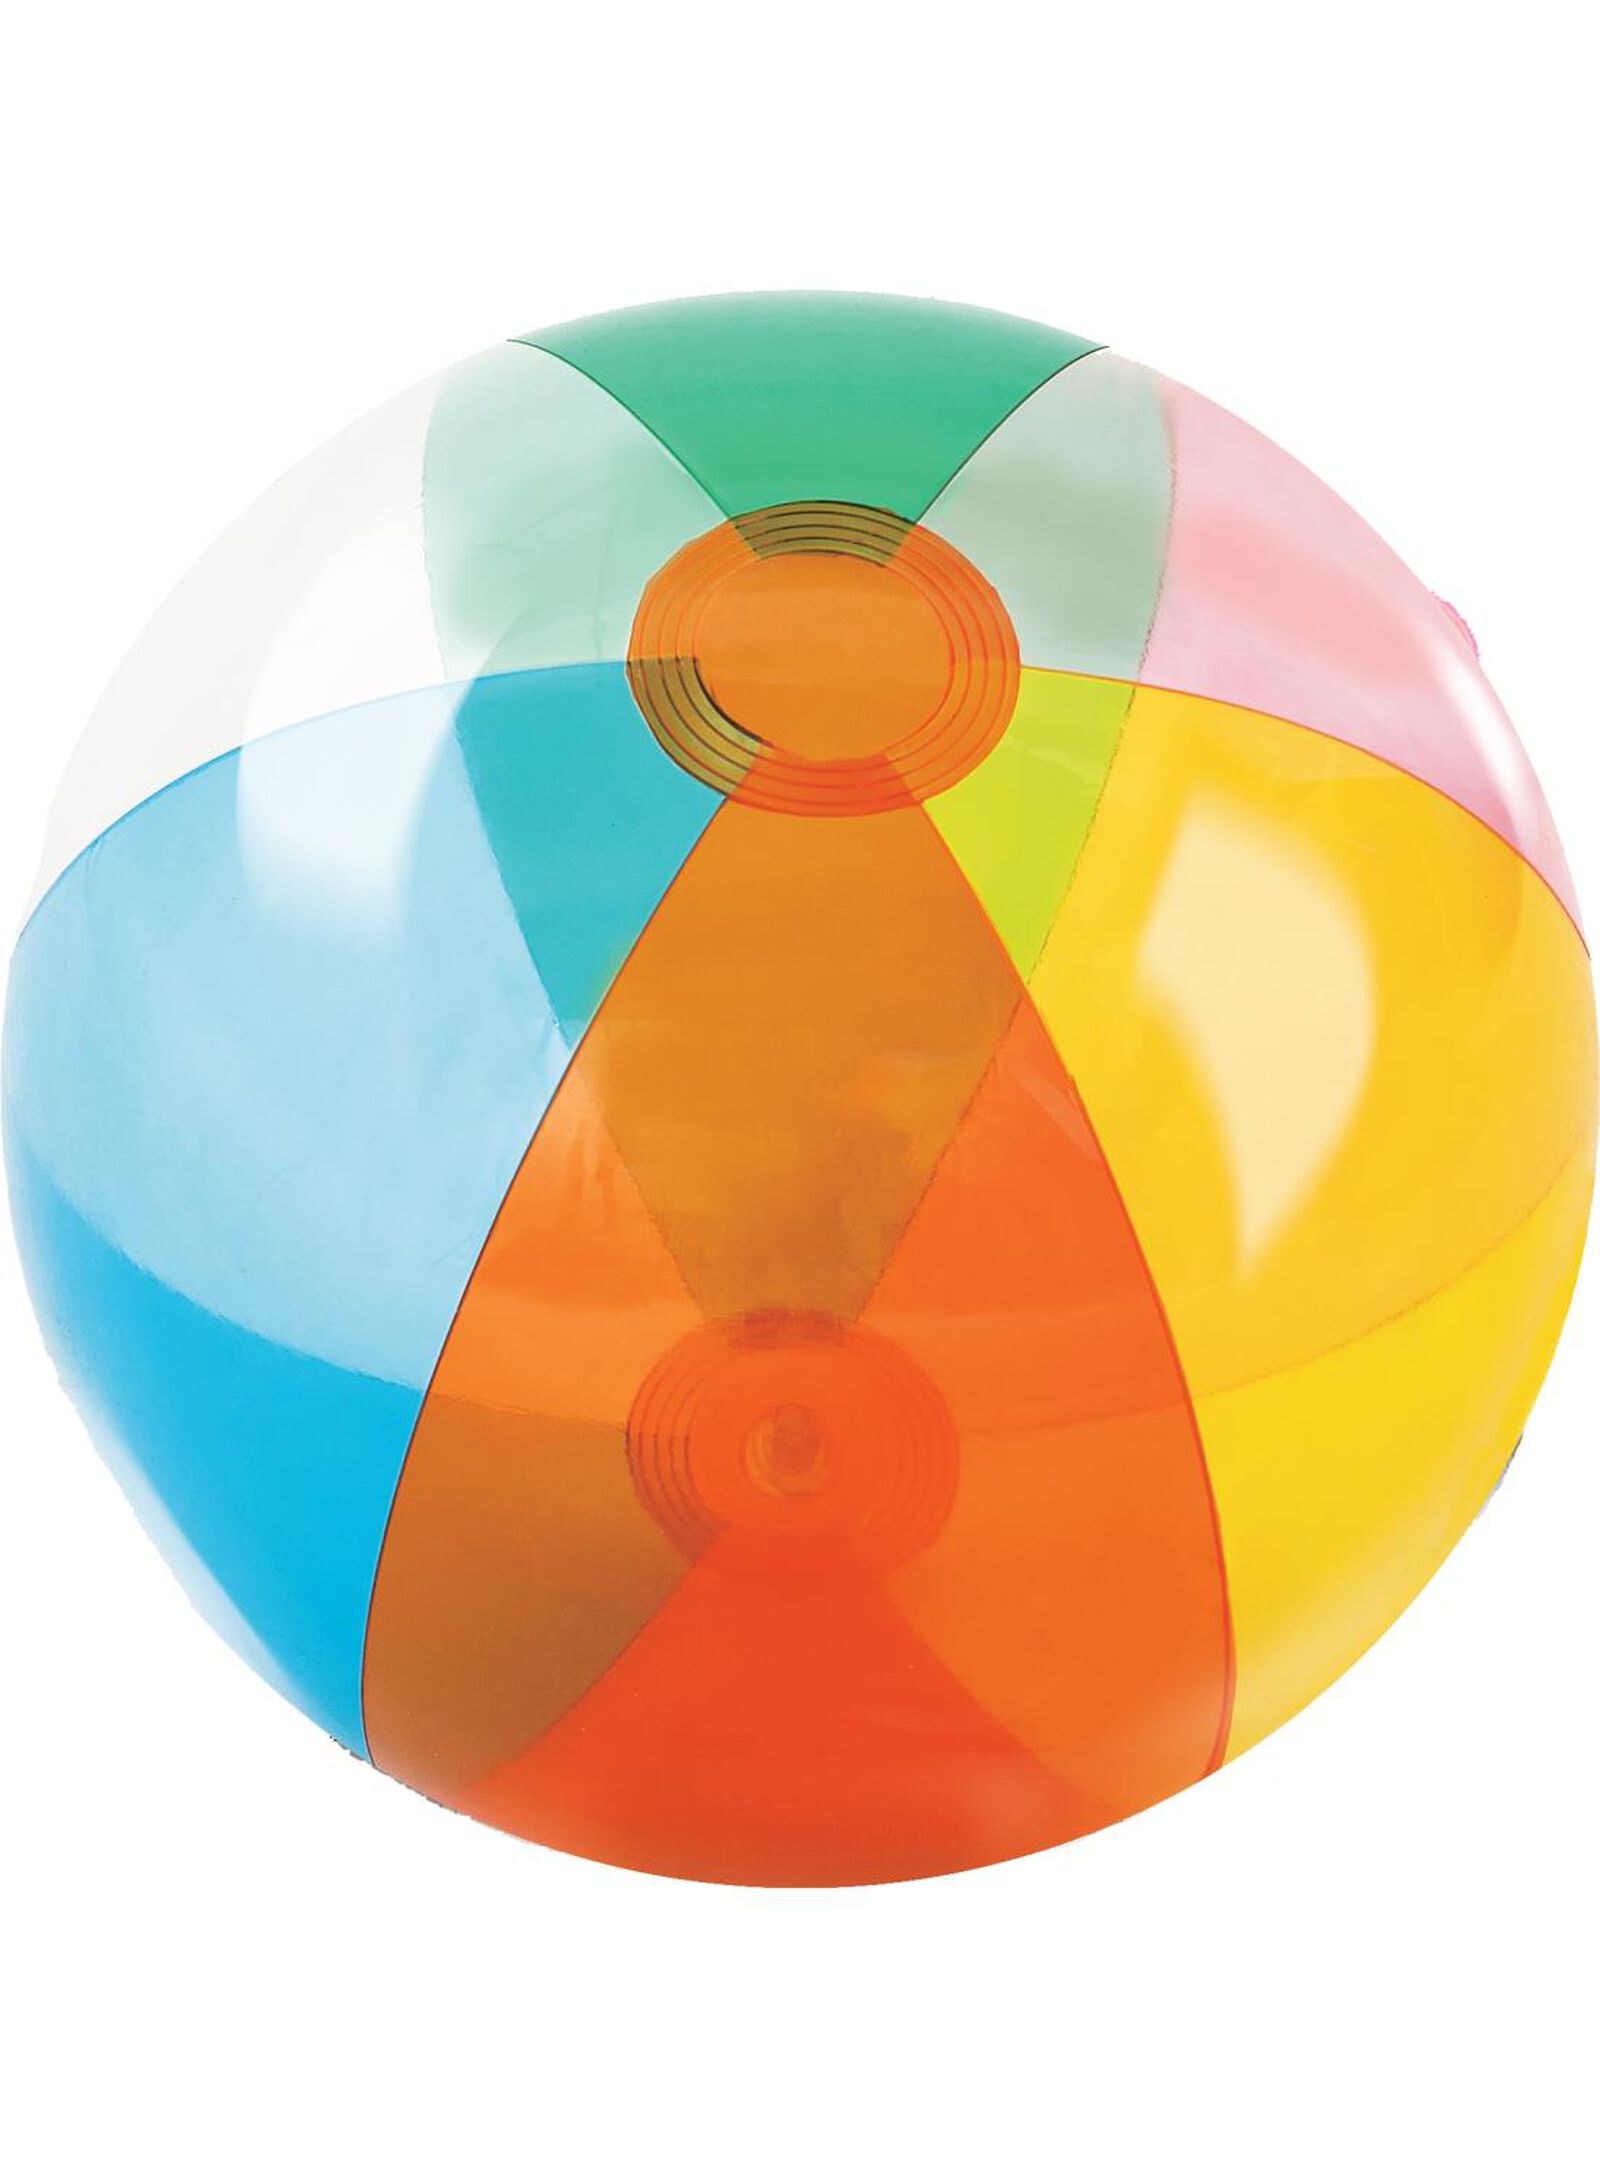 Ballons de Plage,Ballons de Plage Gonflables Portables pour